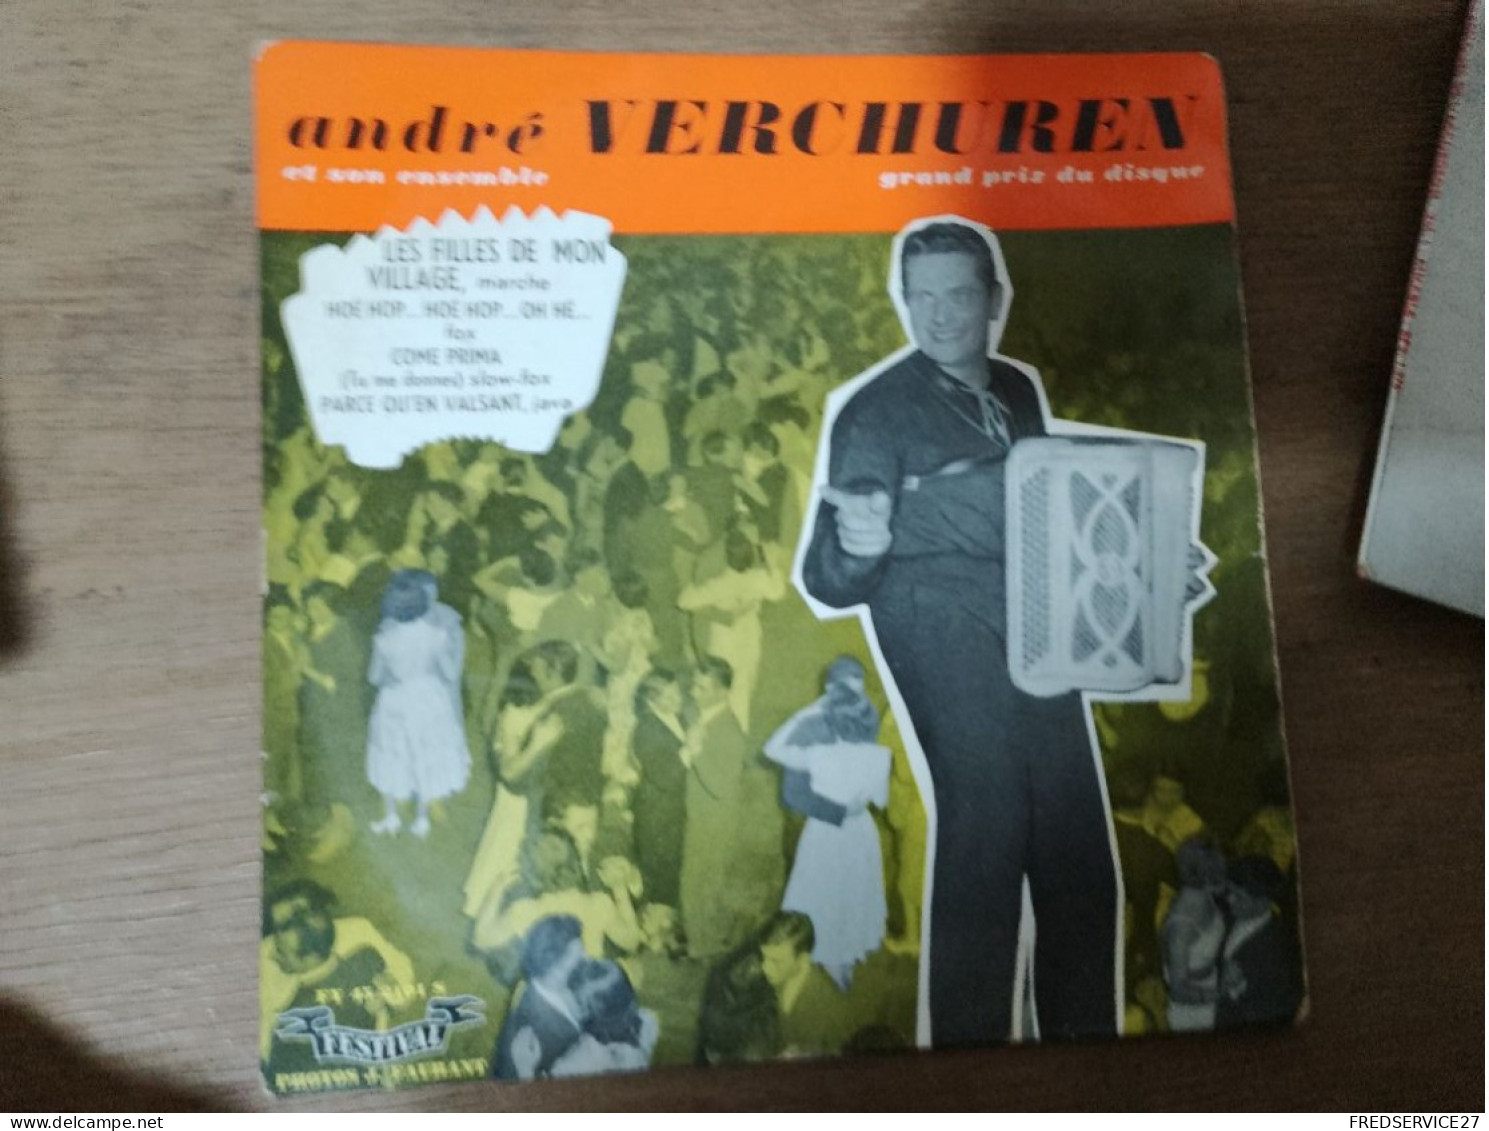 90 //   ANDRE VERCHUREN / LES FILLES DE MON VILLAGE - Instrumental